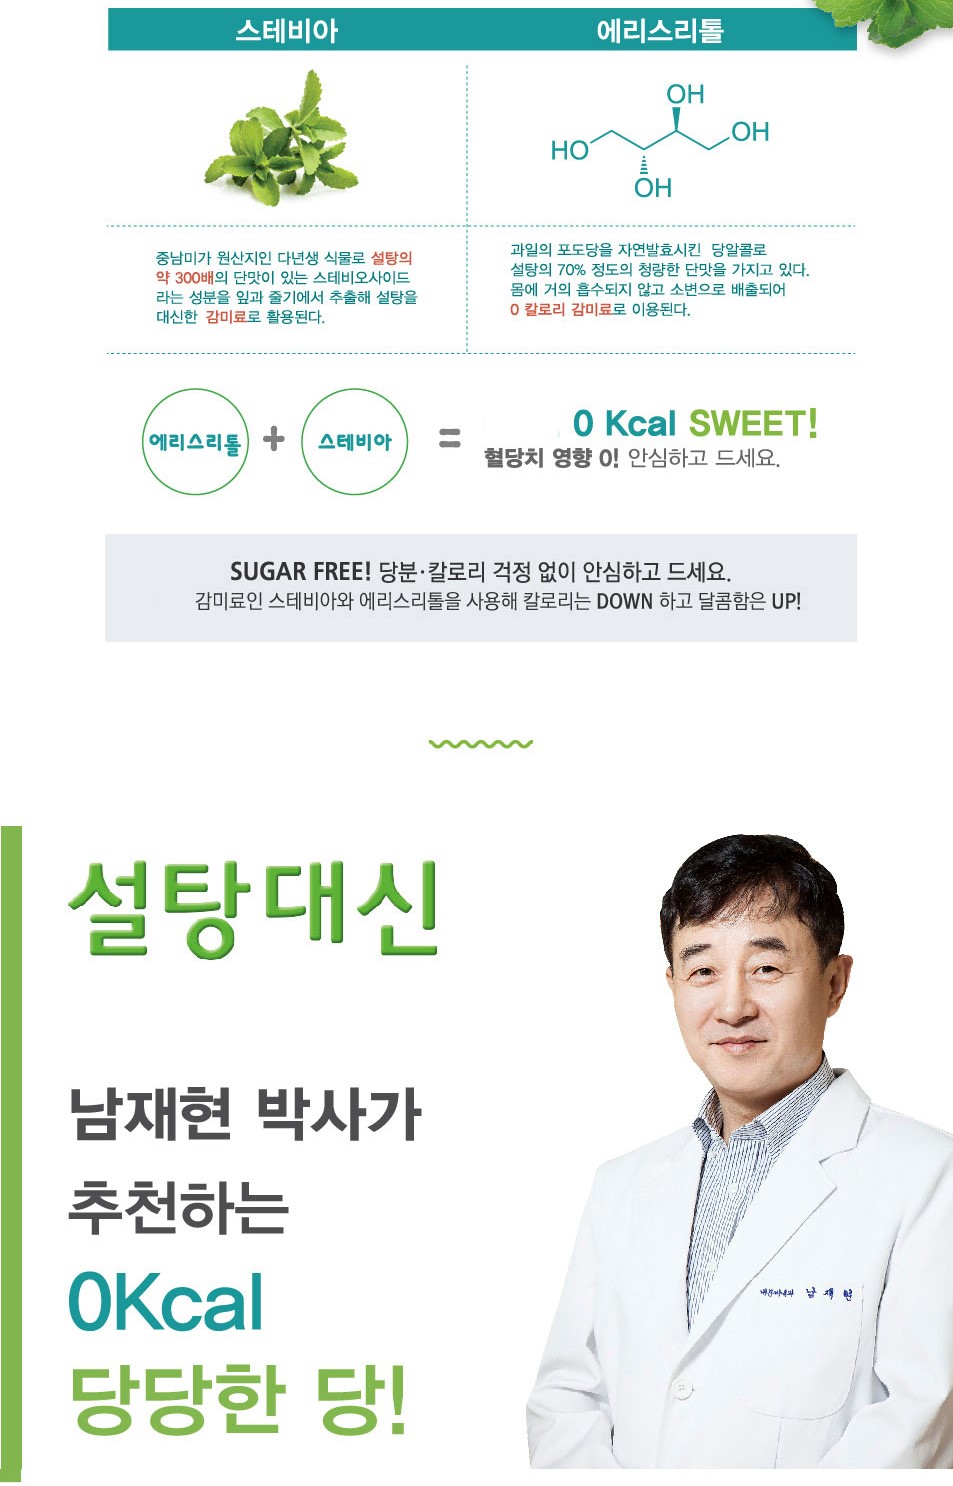 韓國食品-[바이오믹스] 설탕대신 스테비아 650g